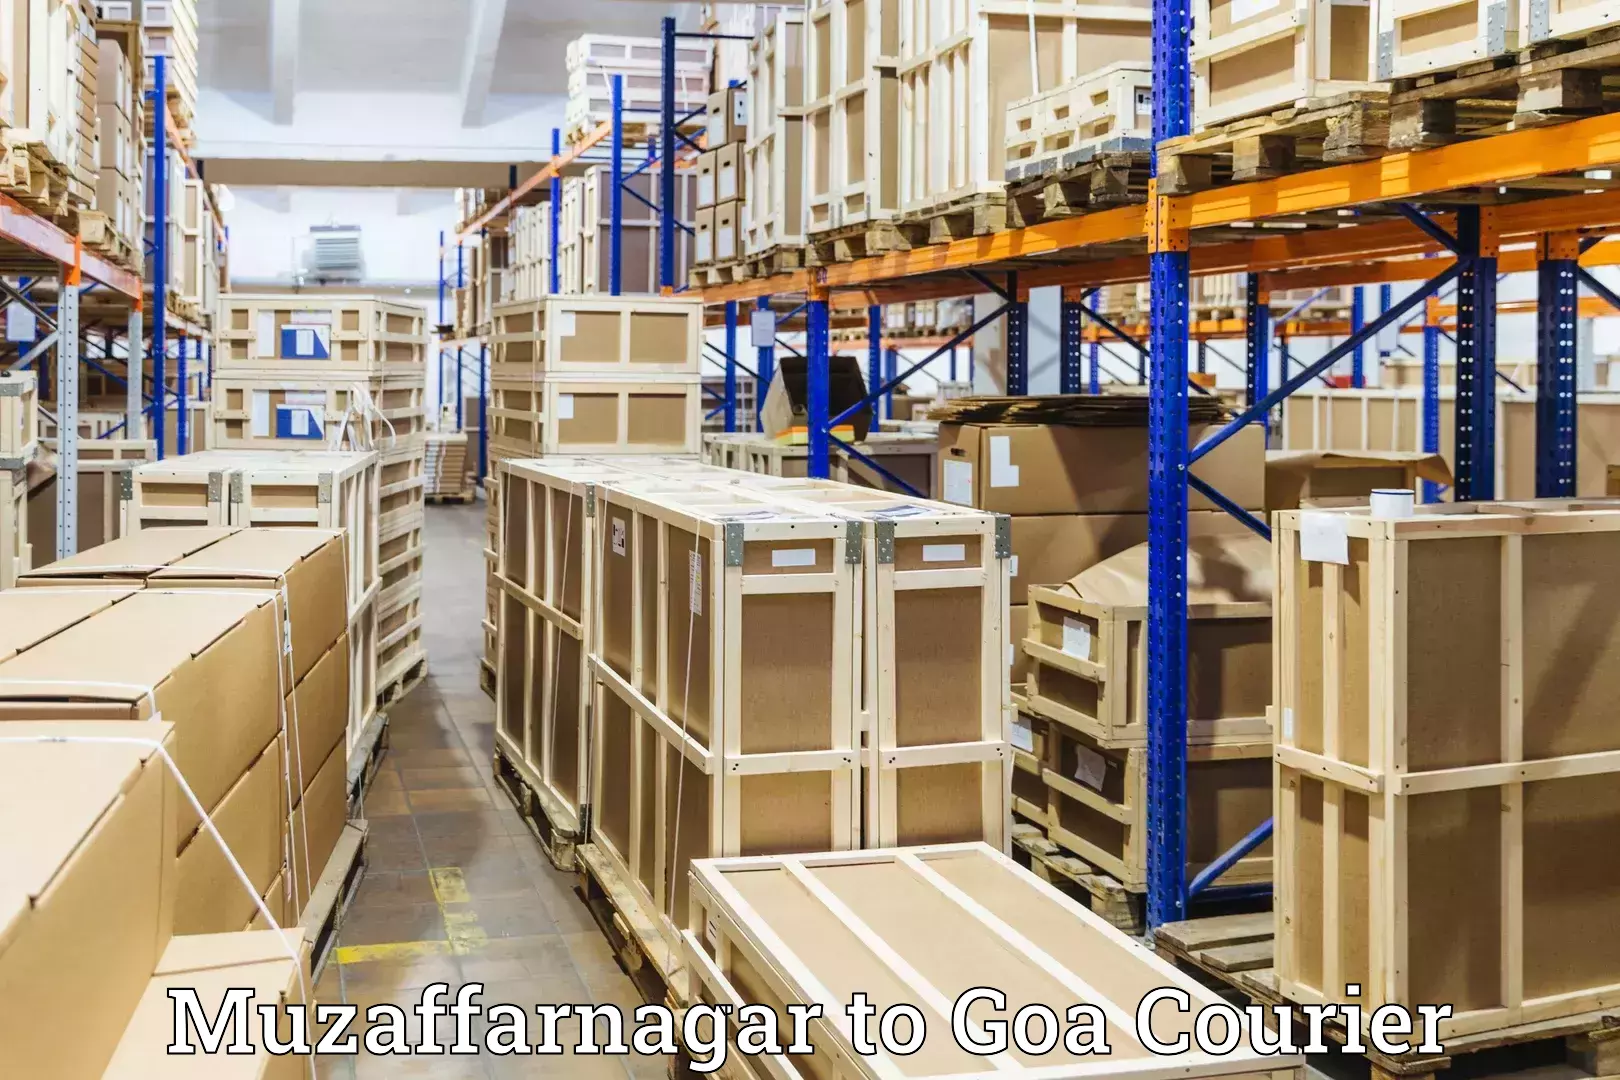 Reliable luggage courier Muzaffarnagar to Panaji